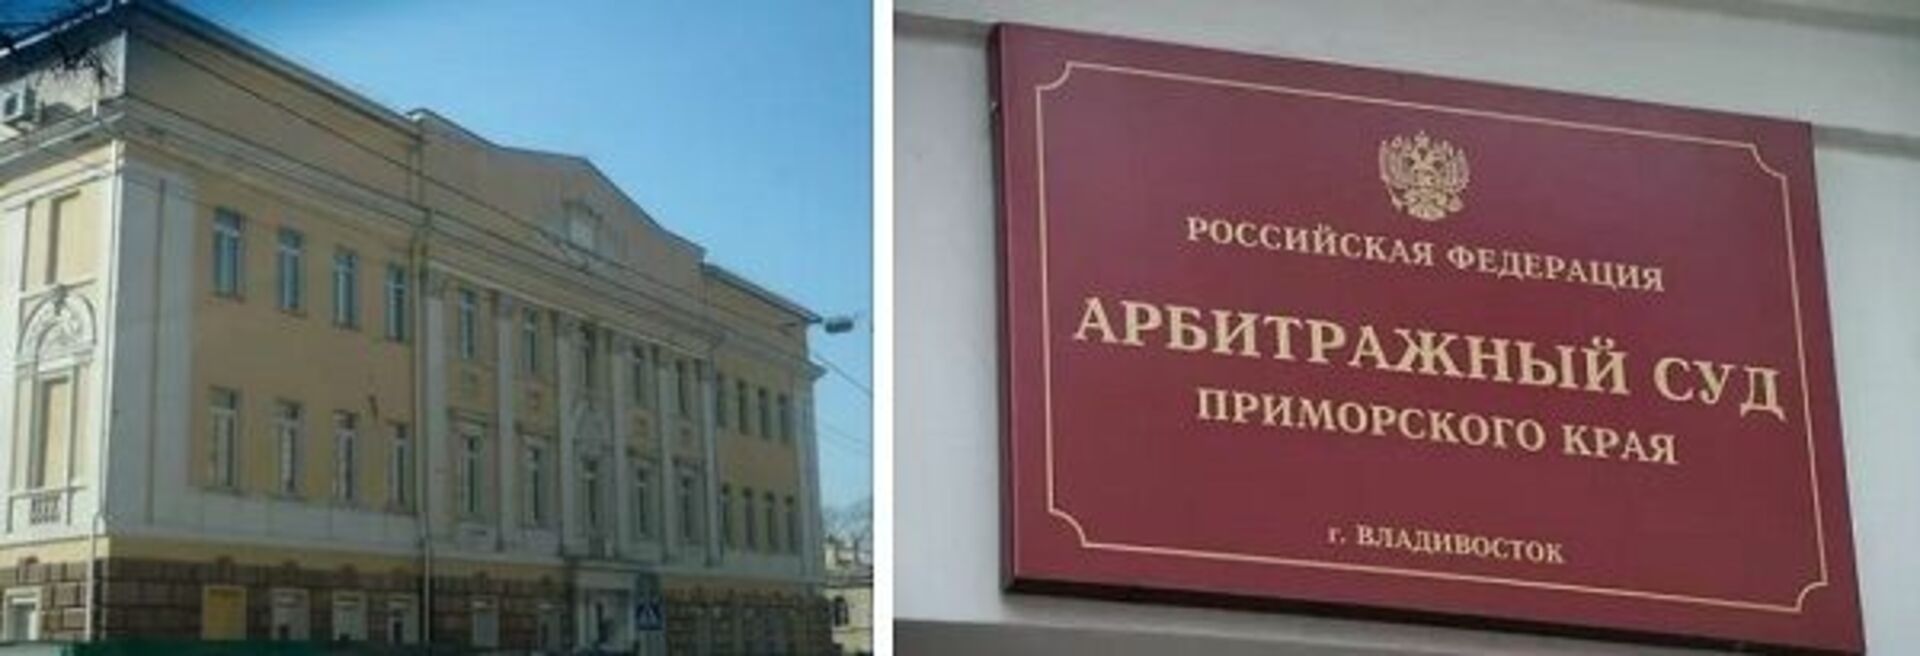 Ленинский суд приморского края